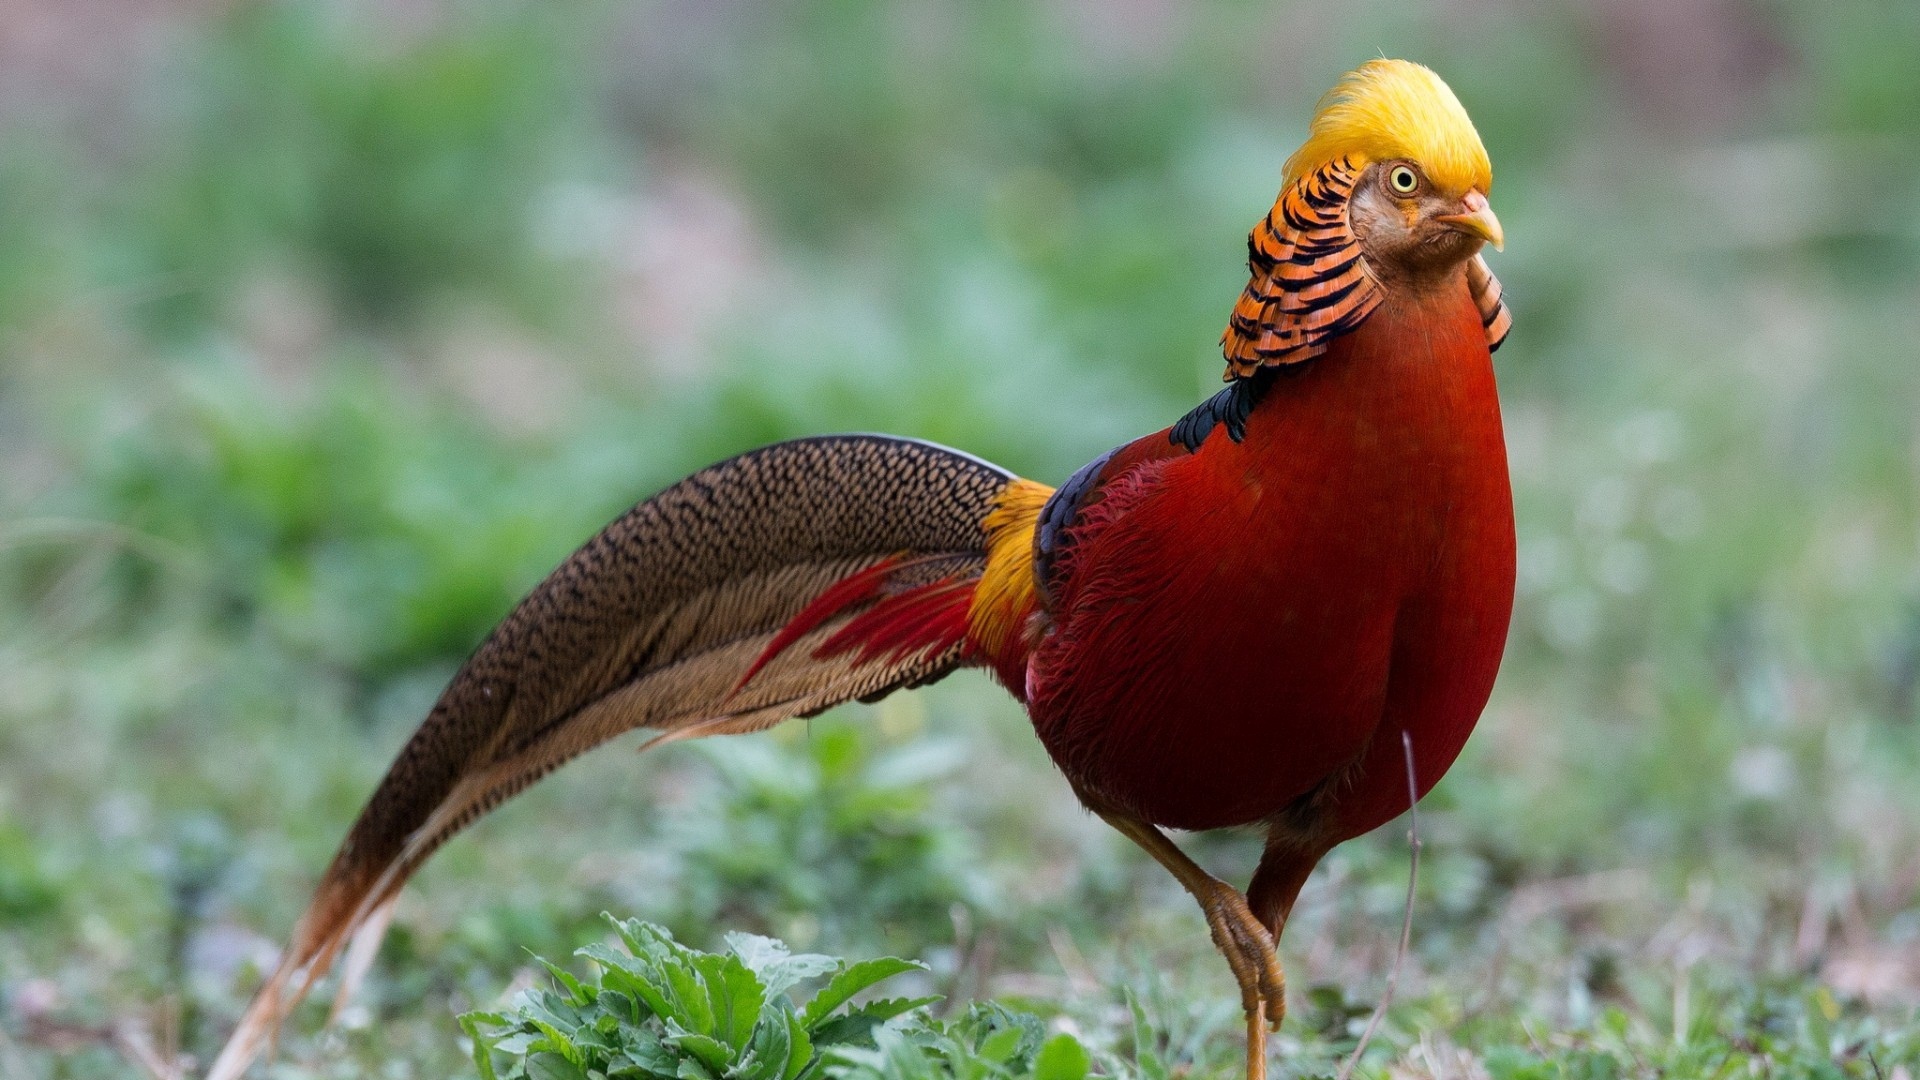 Wallpaper Golden Pheasant, Bird, Walk Full Hd 1080p - Hd Wallpapers 1080p Birds - HD Wallpaper 